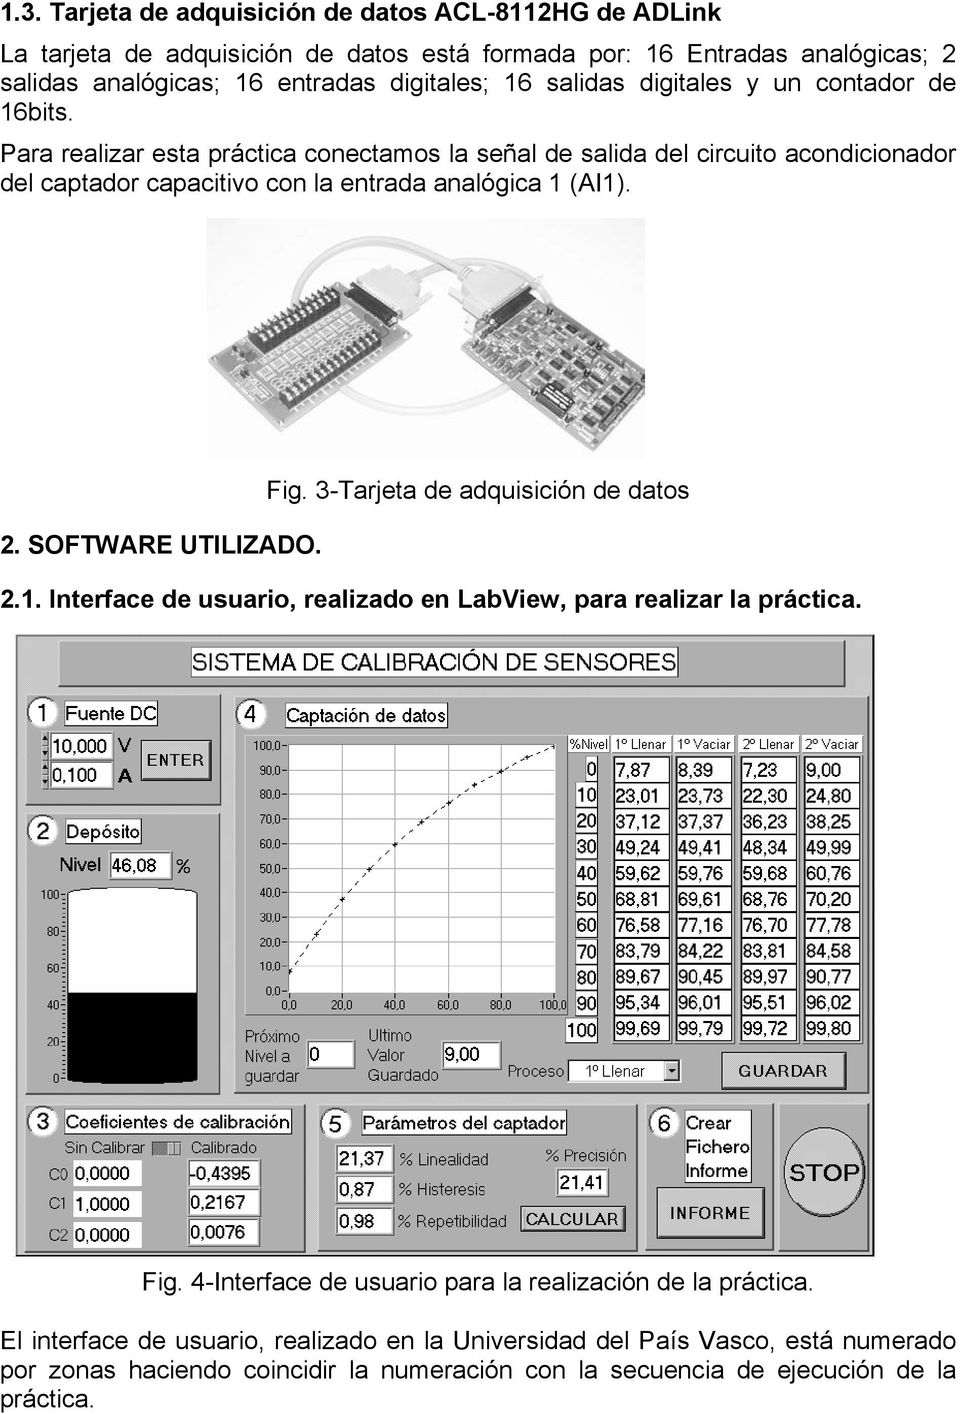 2. SOFTWARE UTILIZADO. Fig. 3-Tarjeta de adquisición de datos 2.1. Interface de usuario, realizado en LabView, para realizar la práctica. Fig. 4-Interface de usuario para la realización de la práctica.